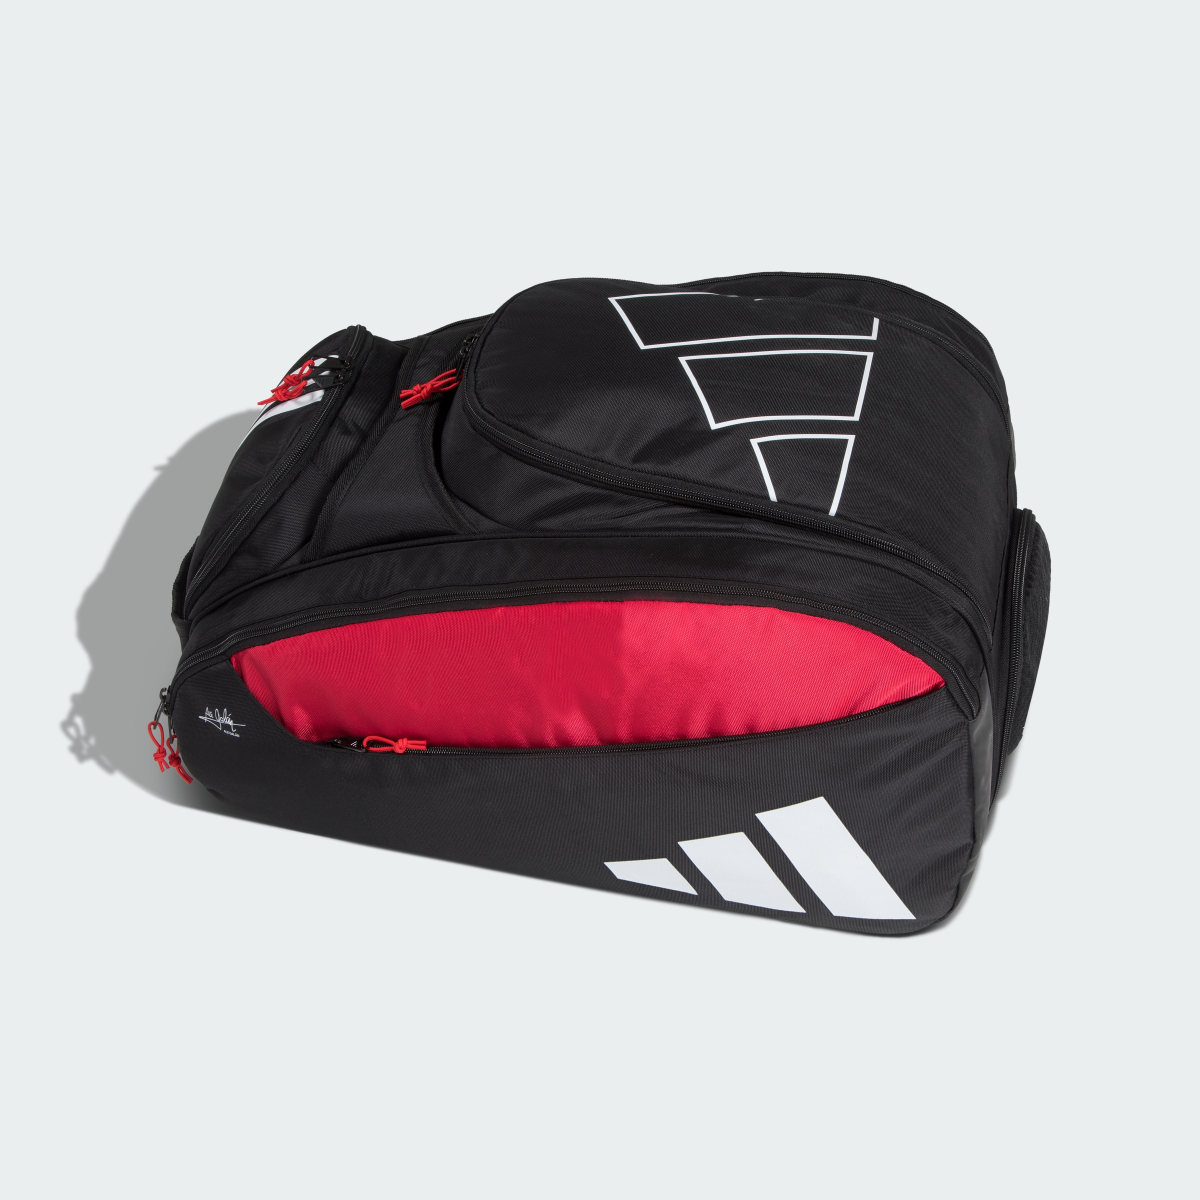 Adidas Racket Bag Multi-Game 3.3 Black. 3